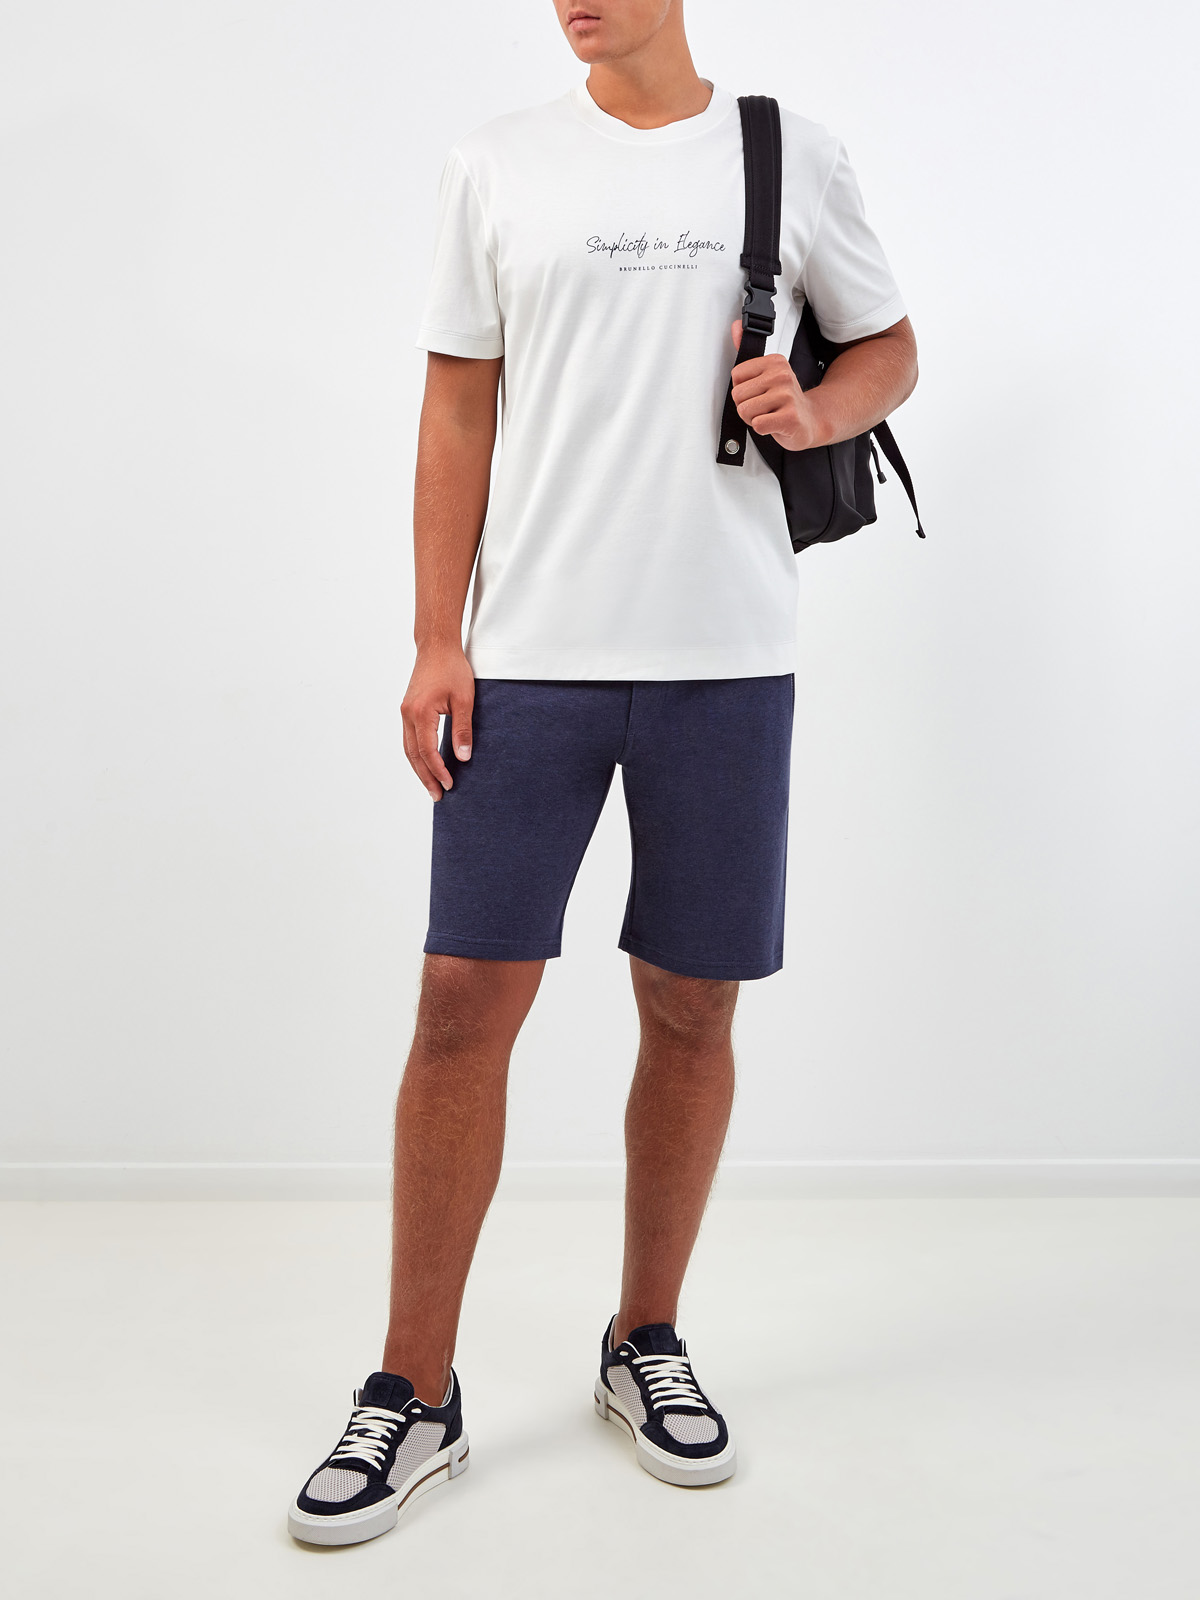 Однотонная футболка из джерси с принтом Simplicity in Elegance BRUNELLO CUCINELLI, цвет белый, размер 54;56;58;60;52 - фото 2